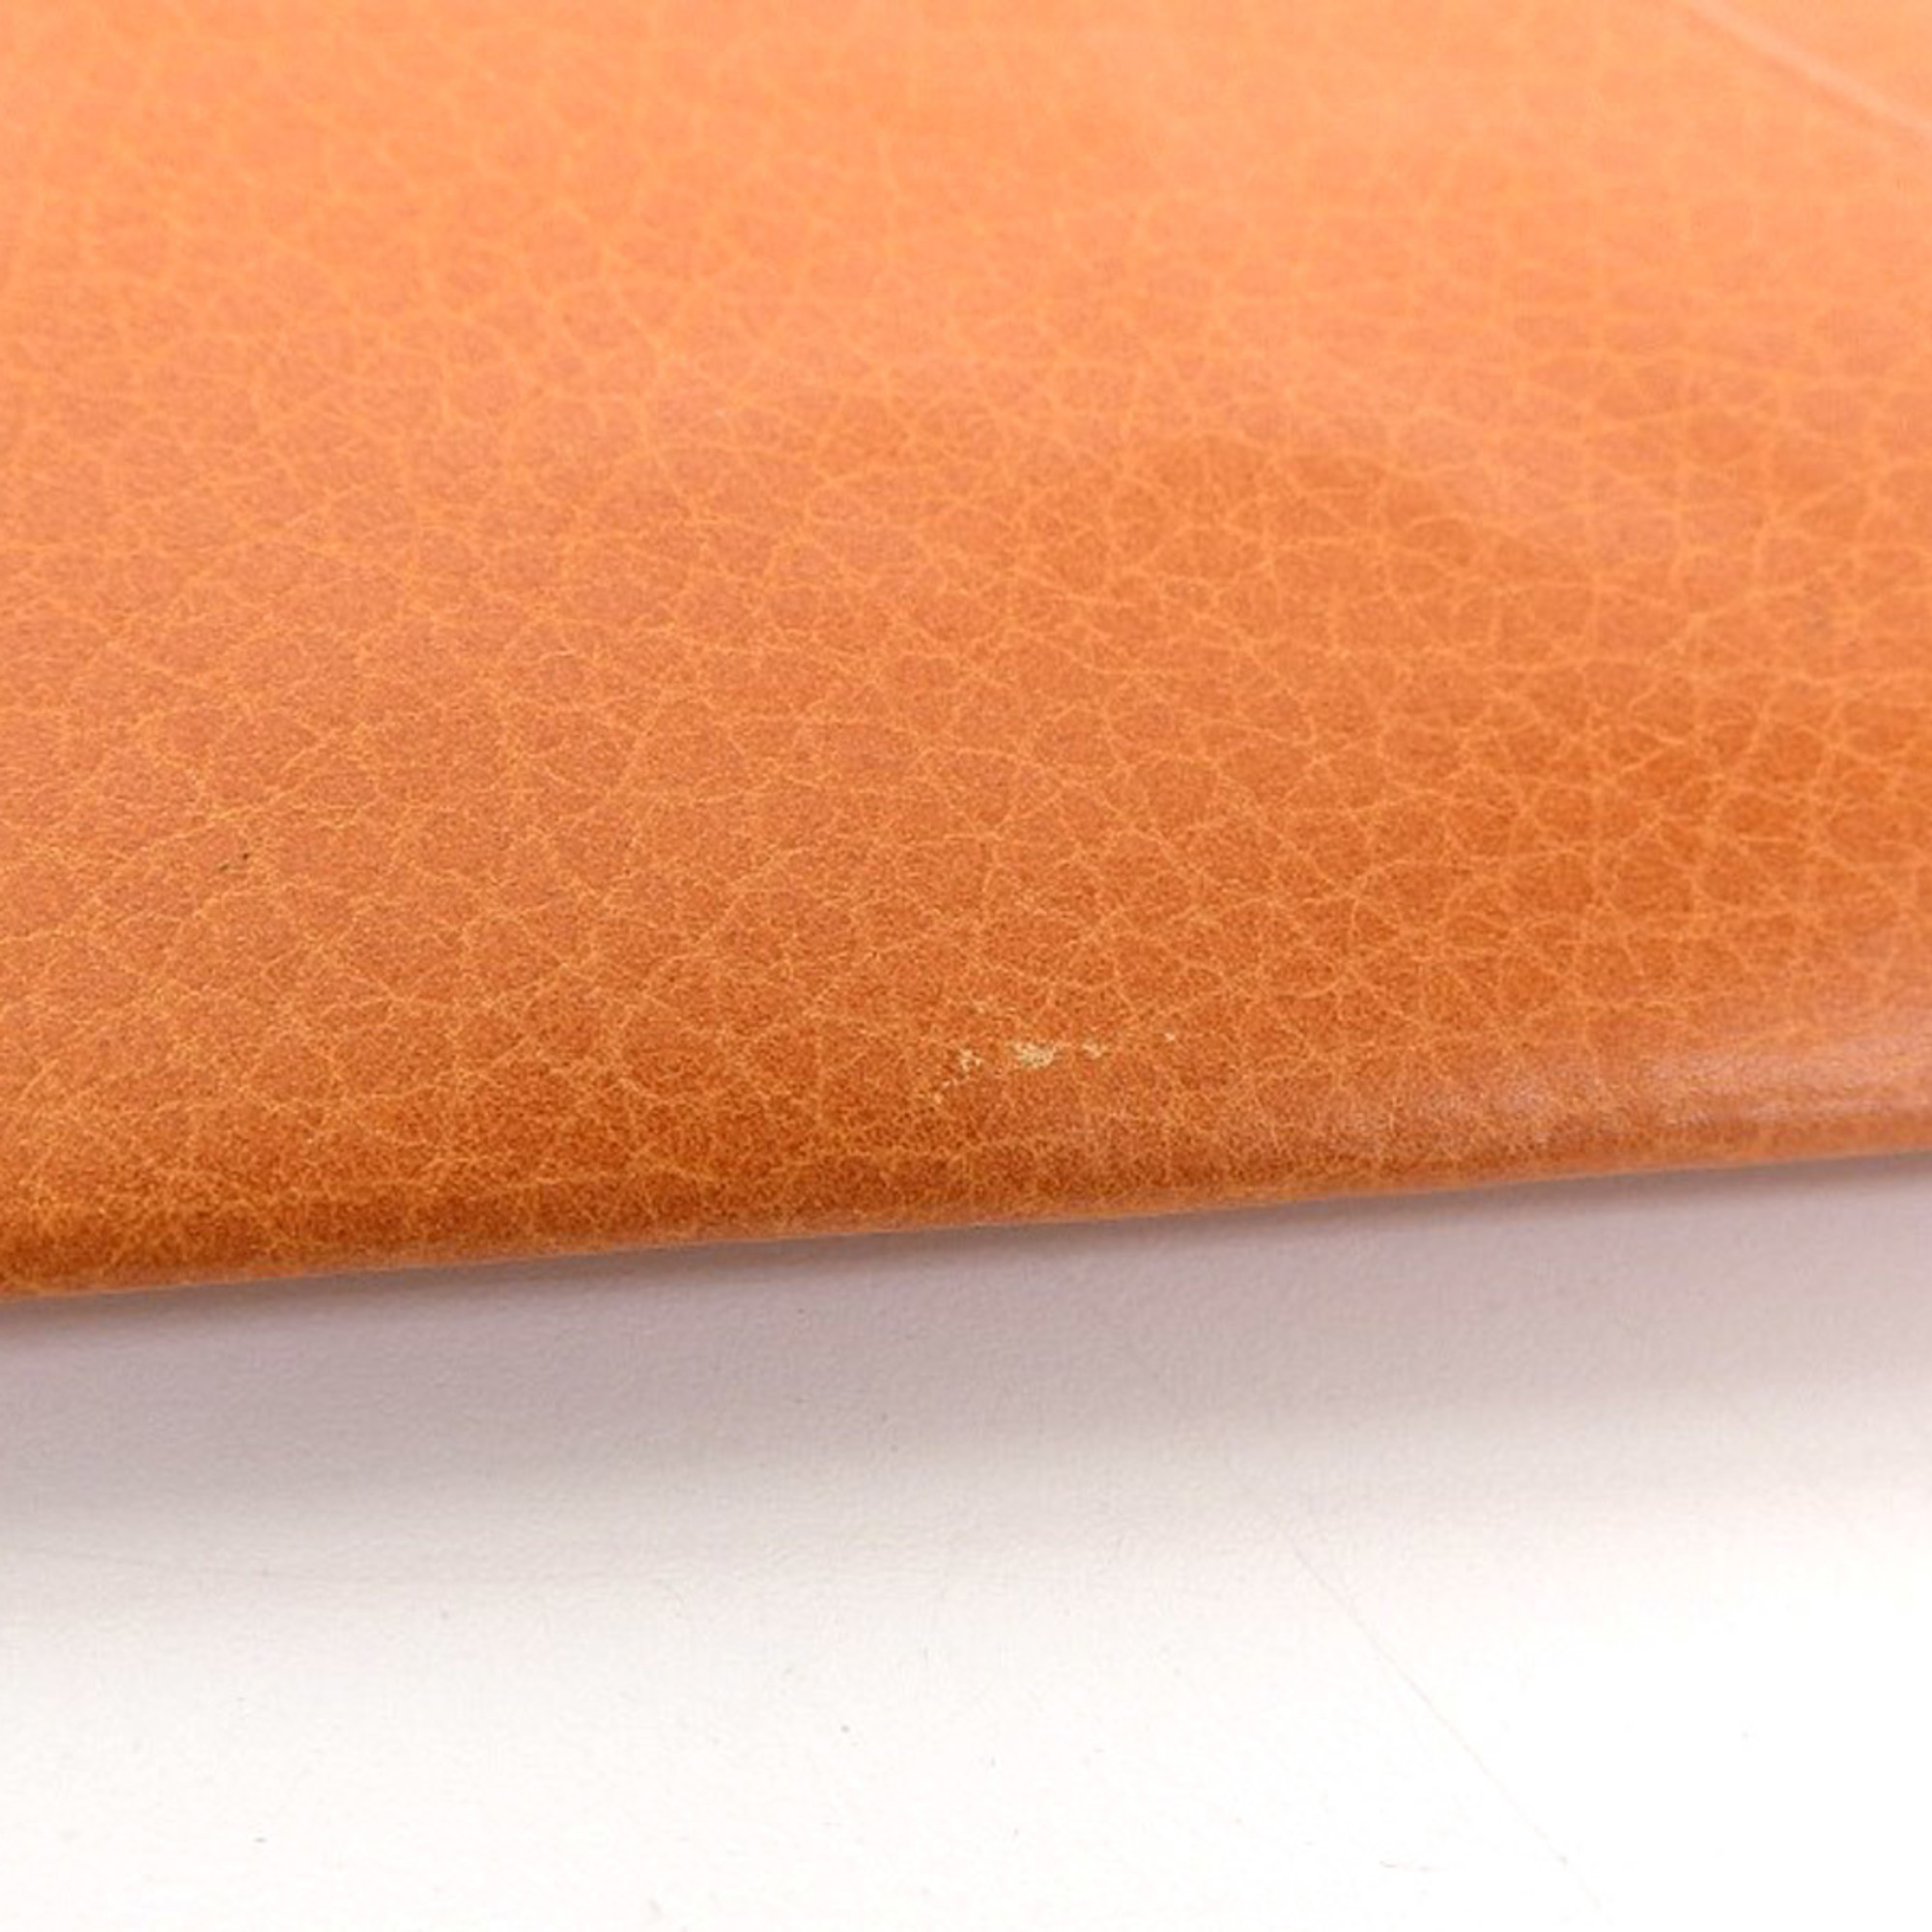 HERMES Hermes Folding Wallet Leather Orange 